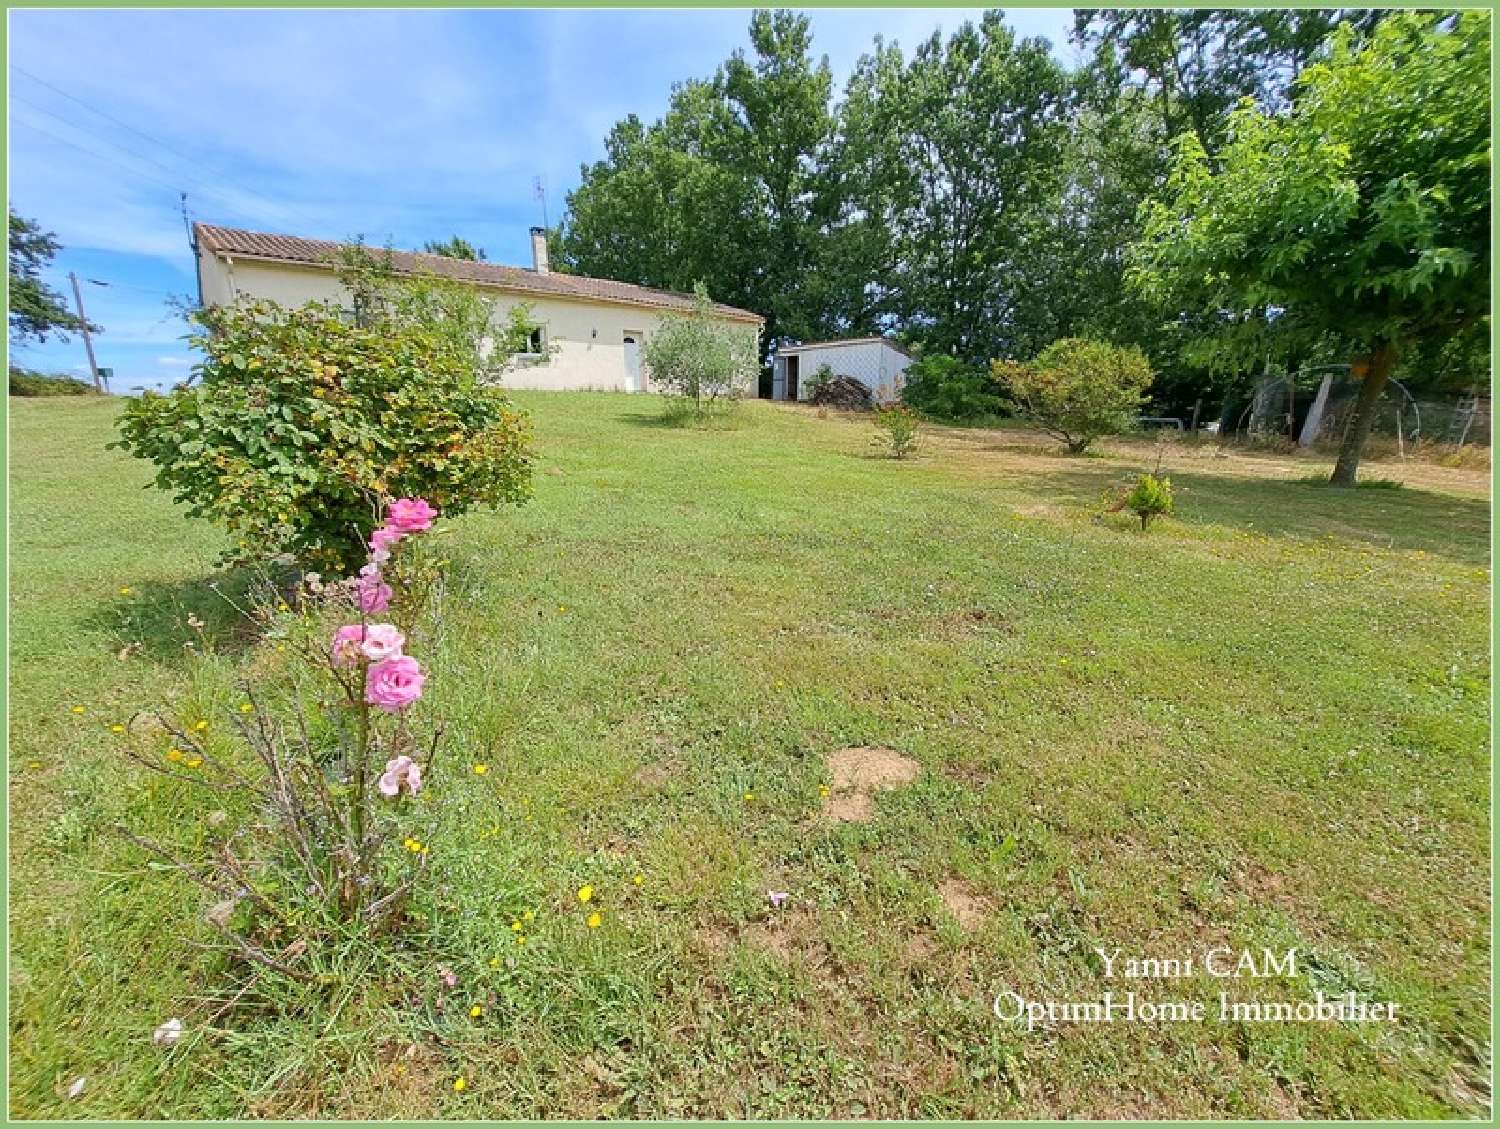  à vendre maison Monfaucon Dordogne 7